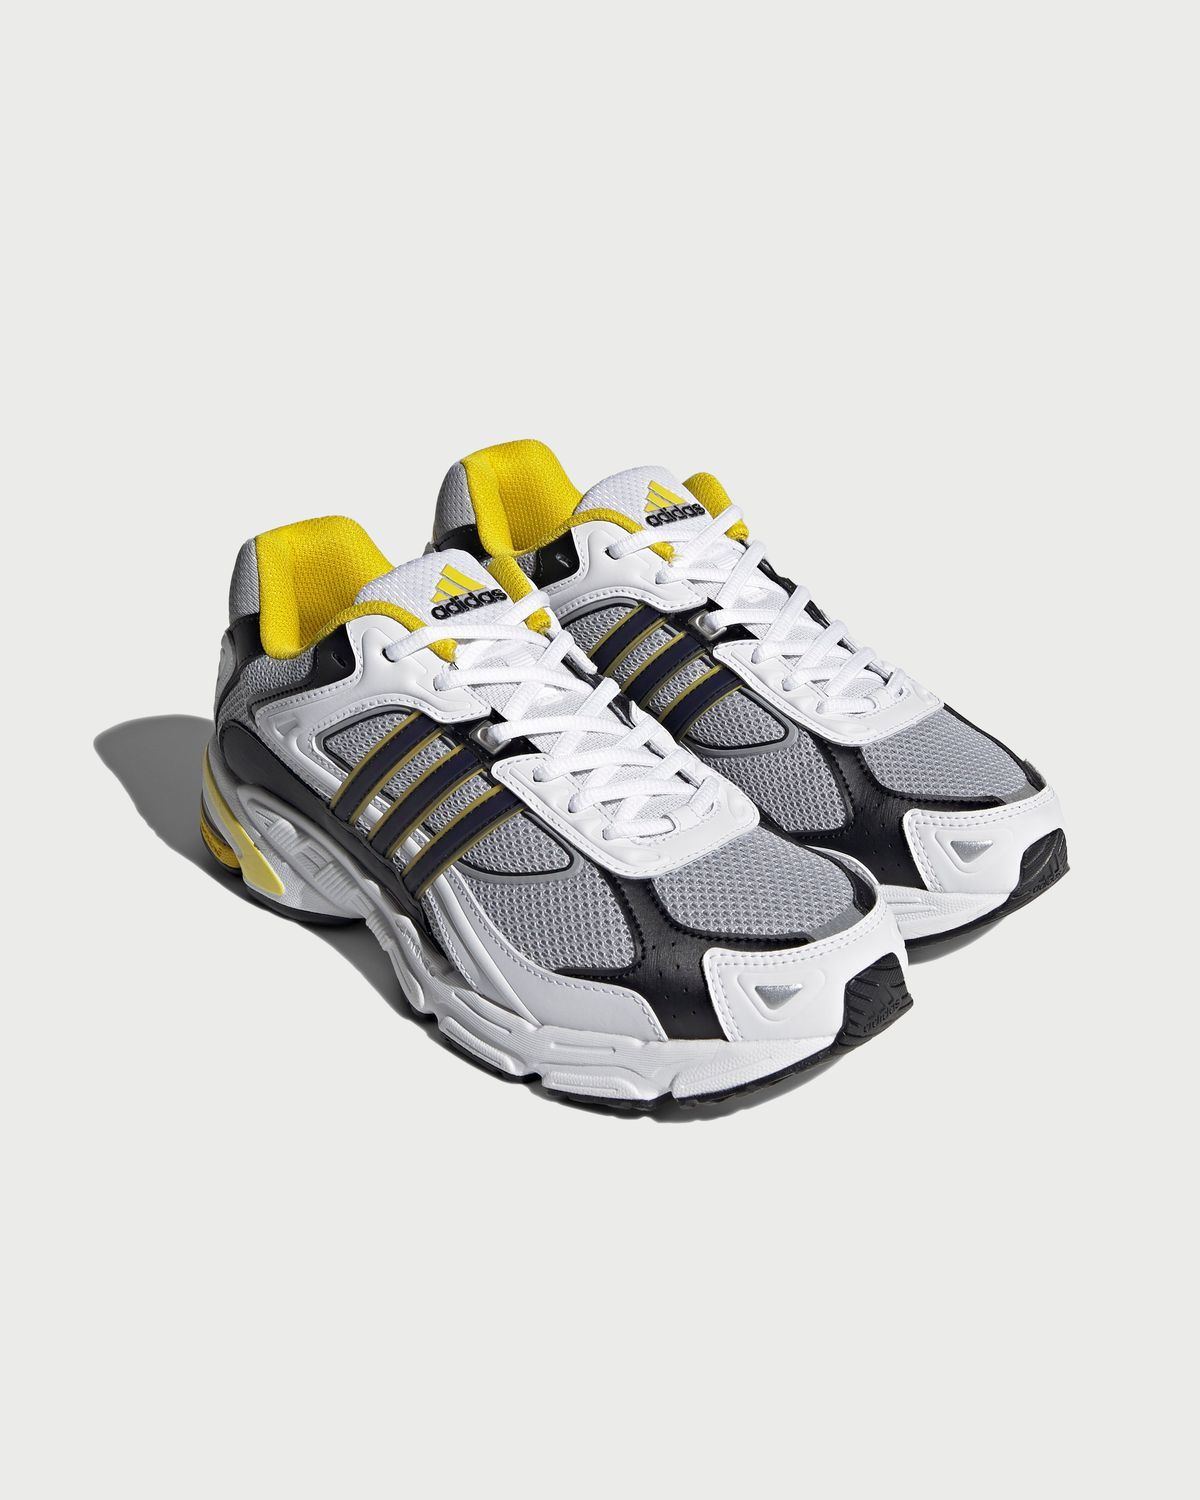 Adidas – Response CL White/Yellow - Sneakers - White - Image 2